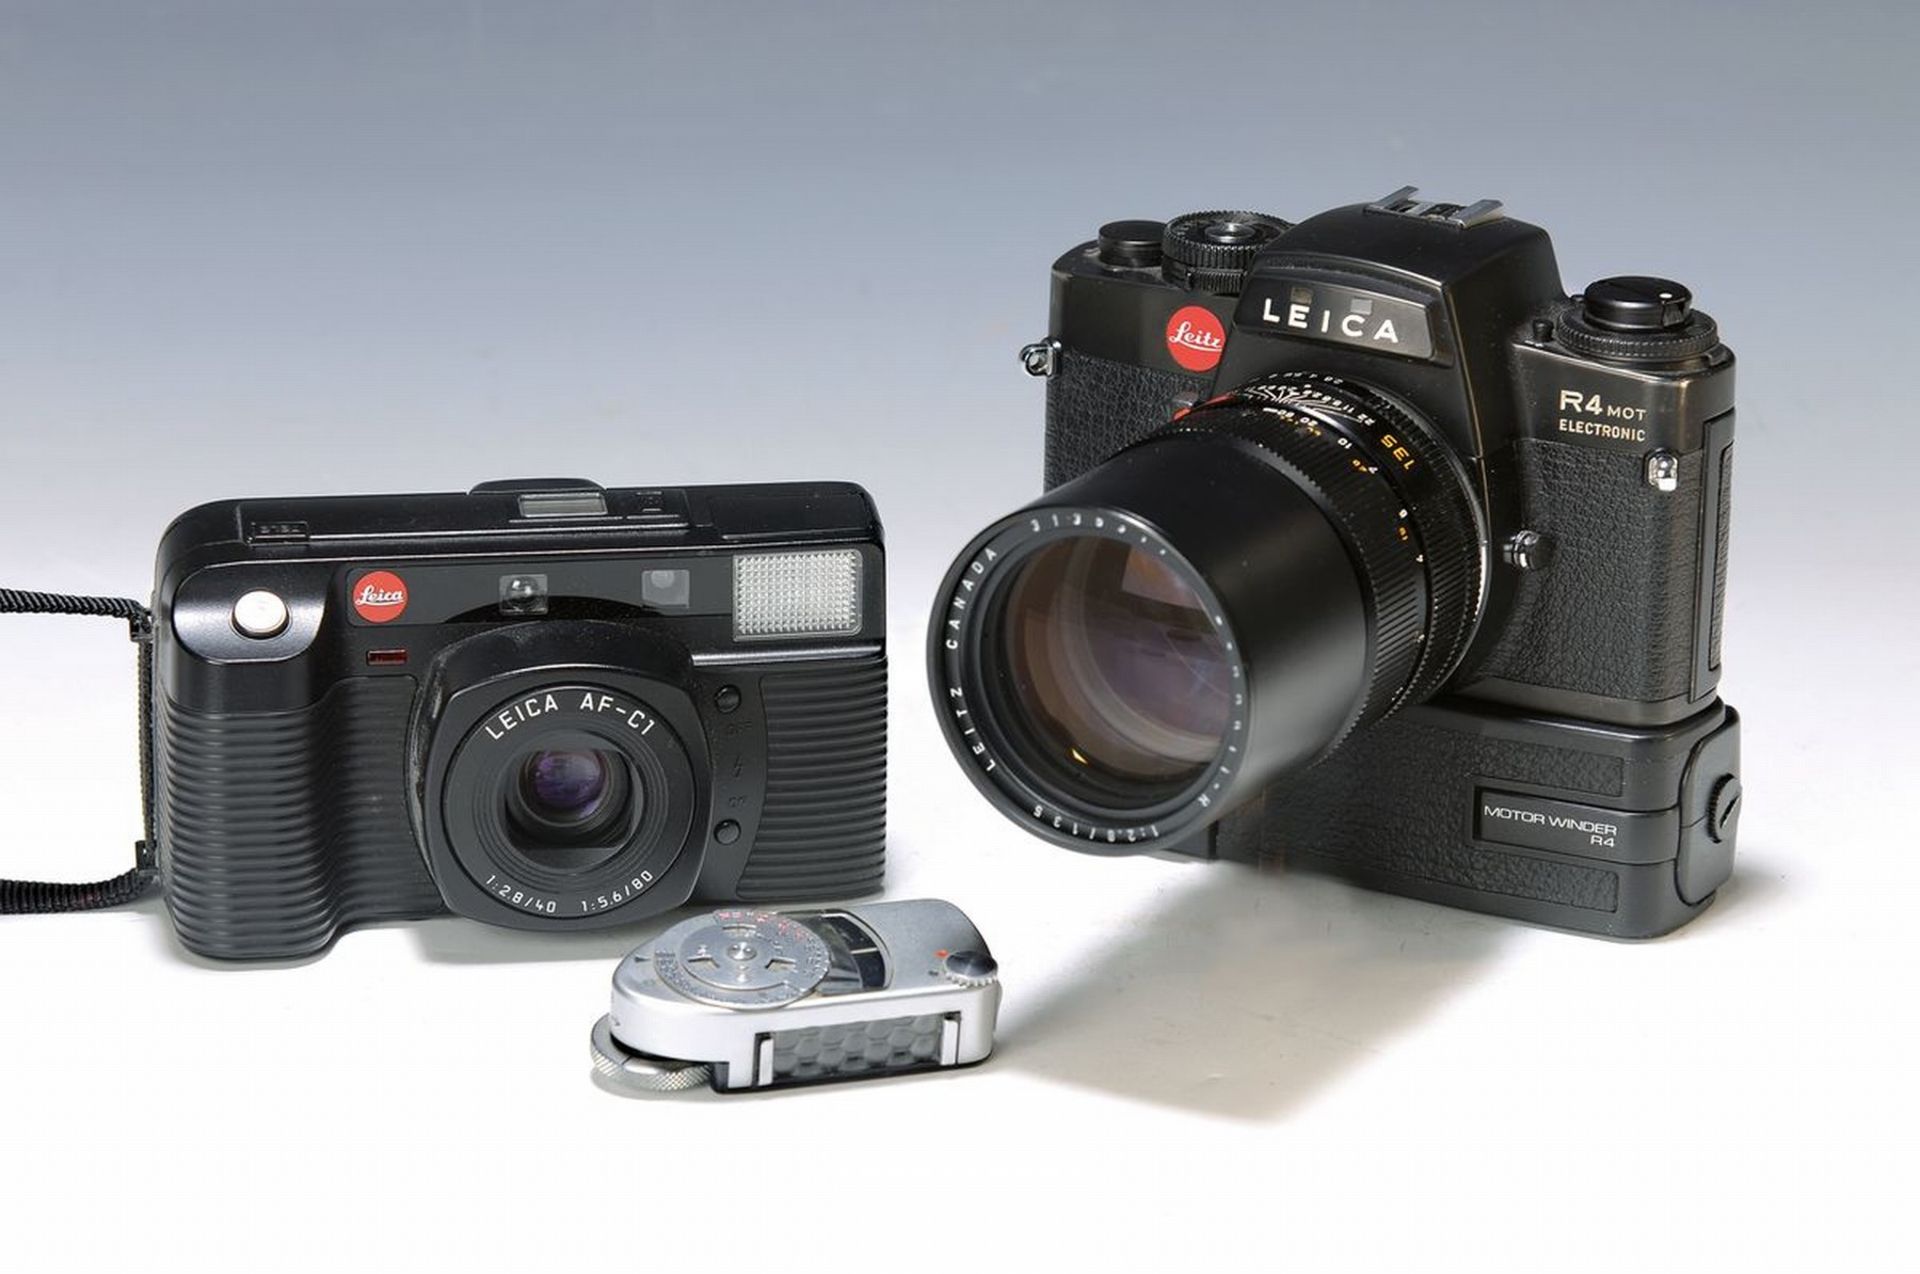 Leica Spiegelreflexkamera R 4 mit, Motor- Winder und